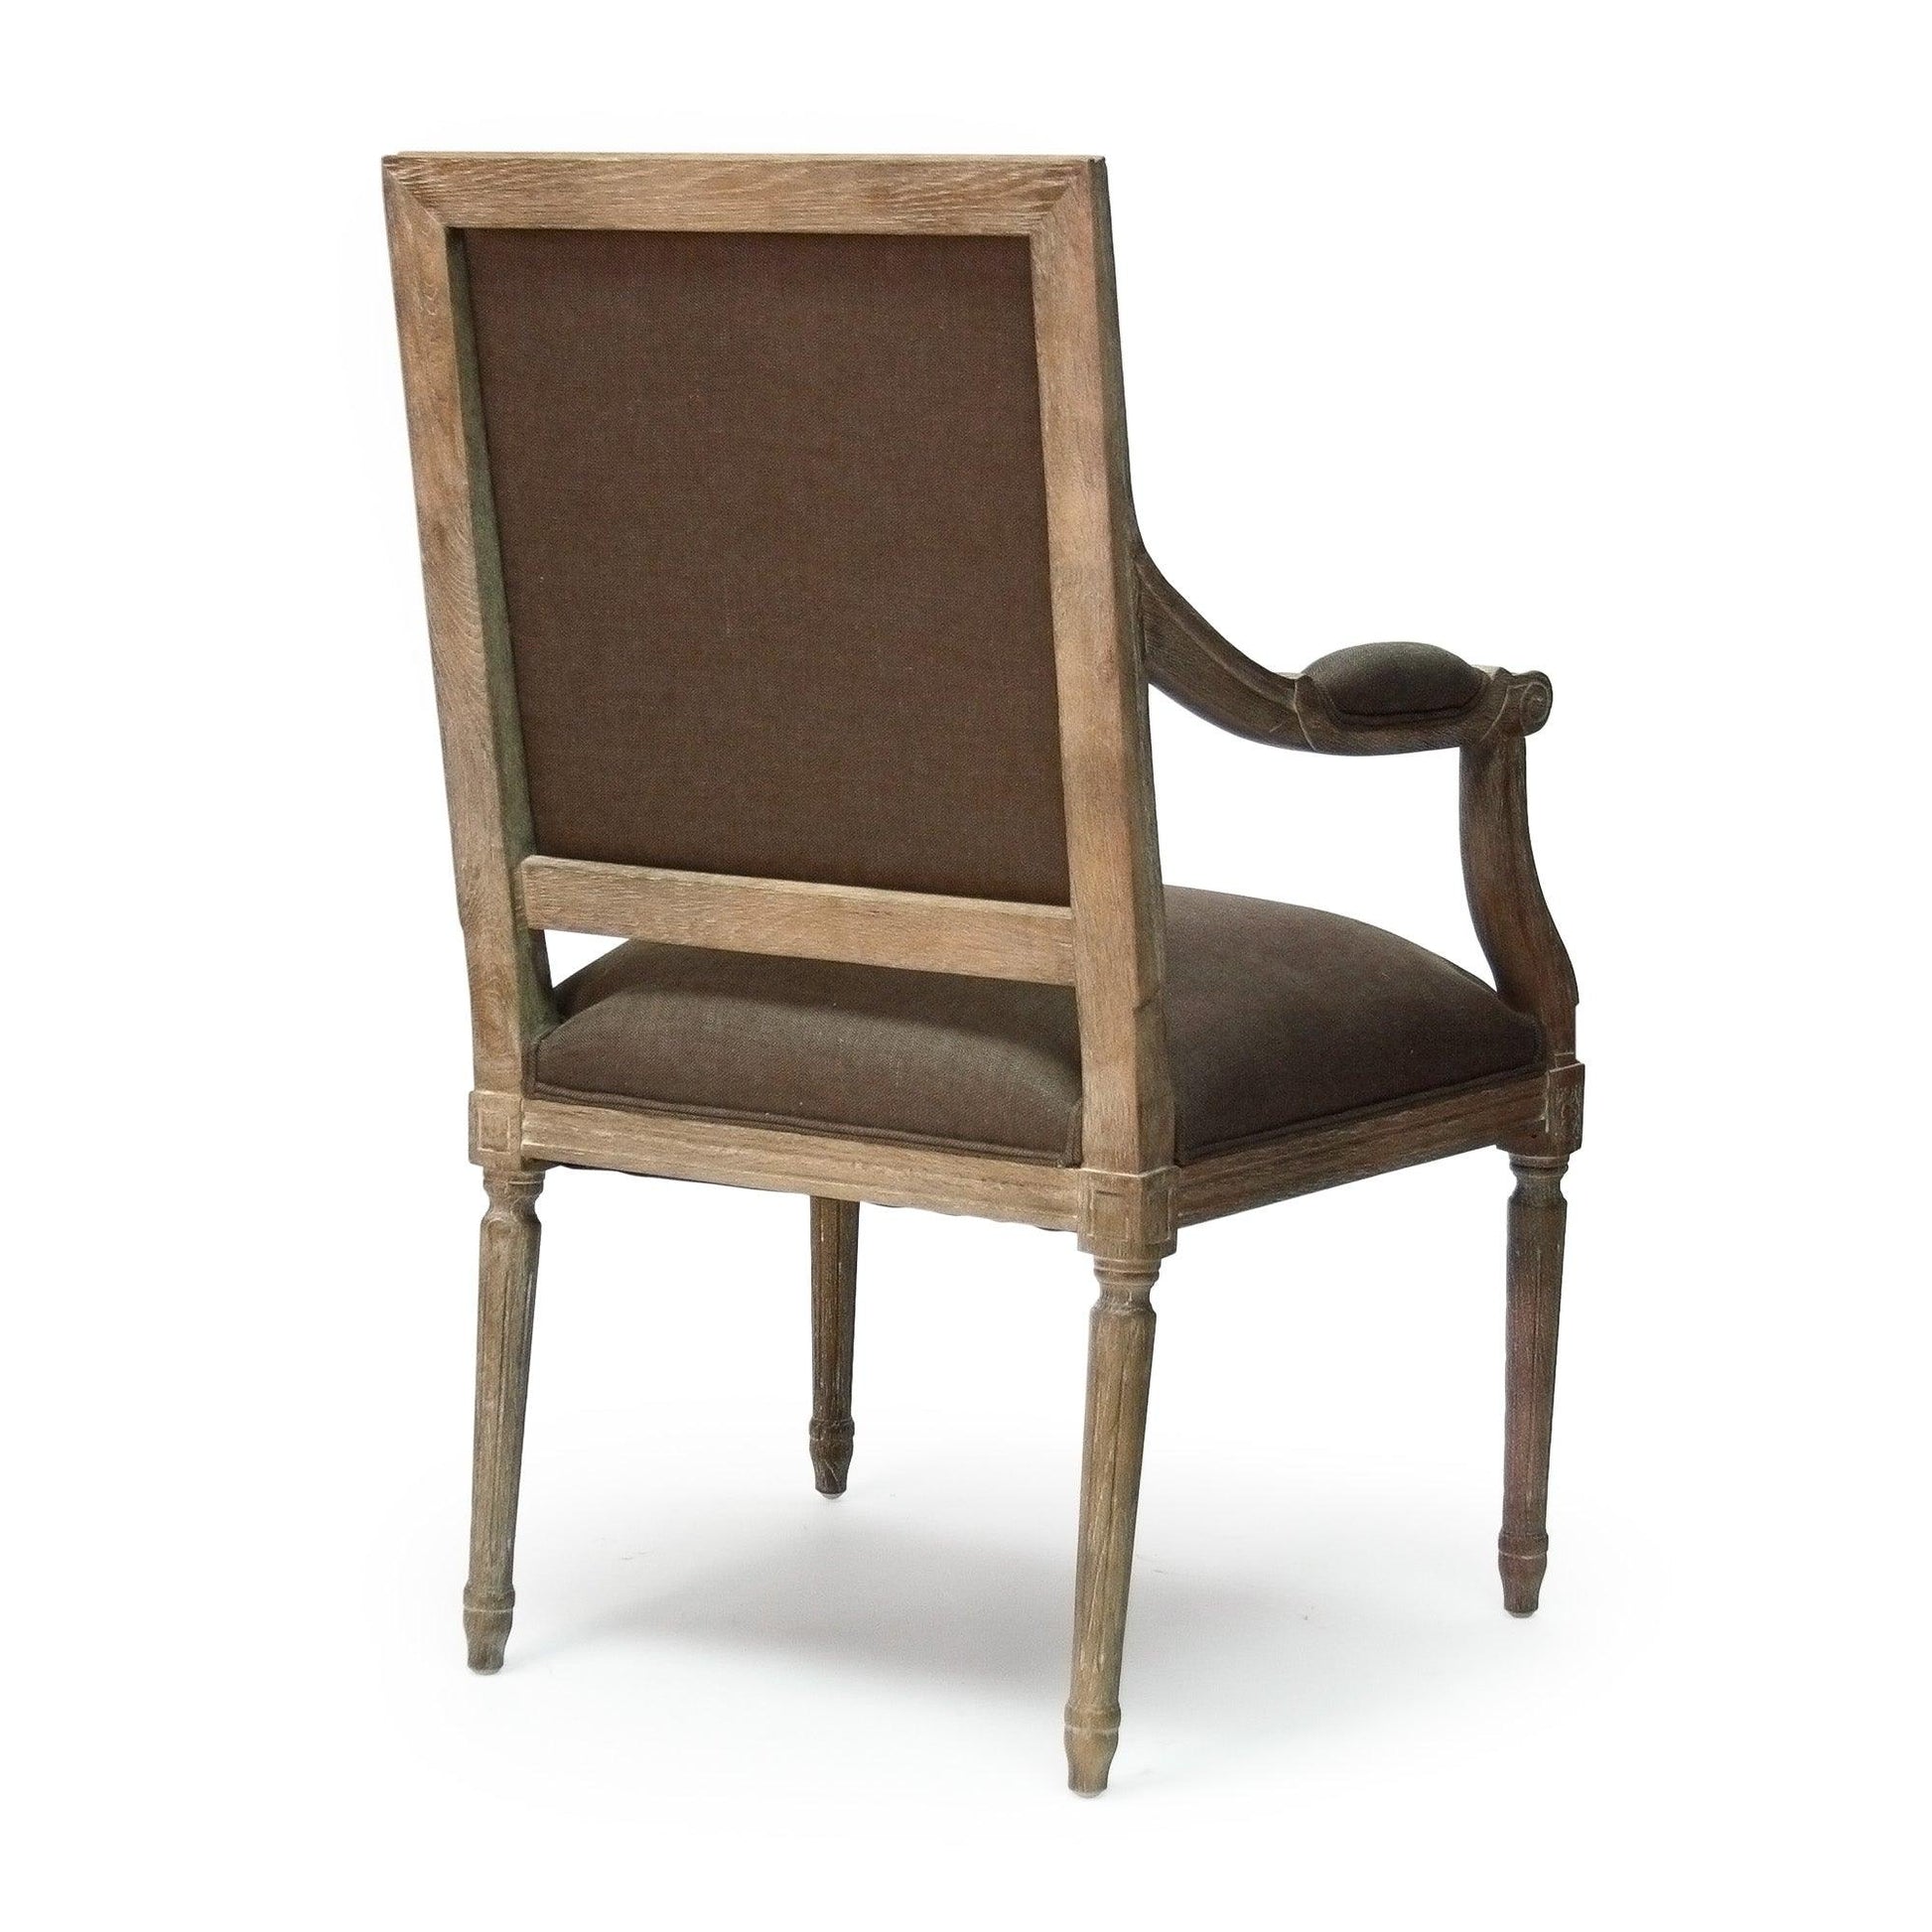 Louis Arm Chair B008 E272 A008 FredCo